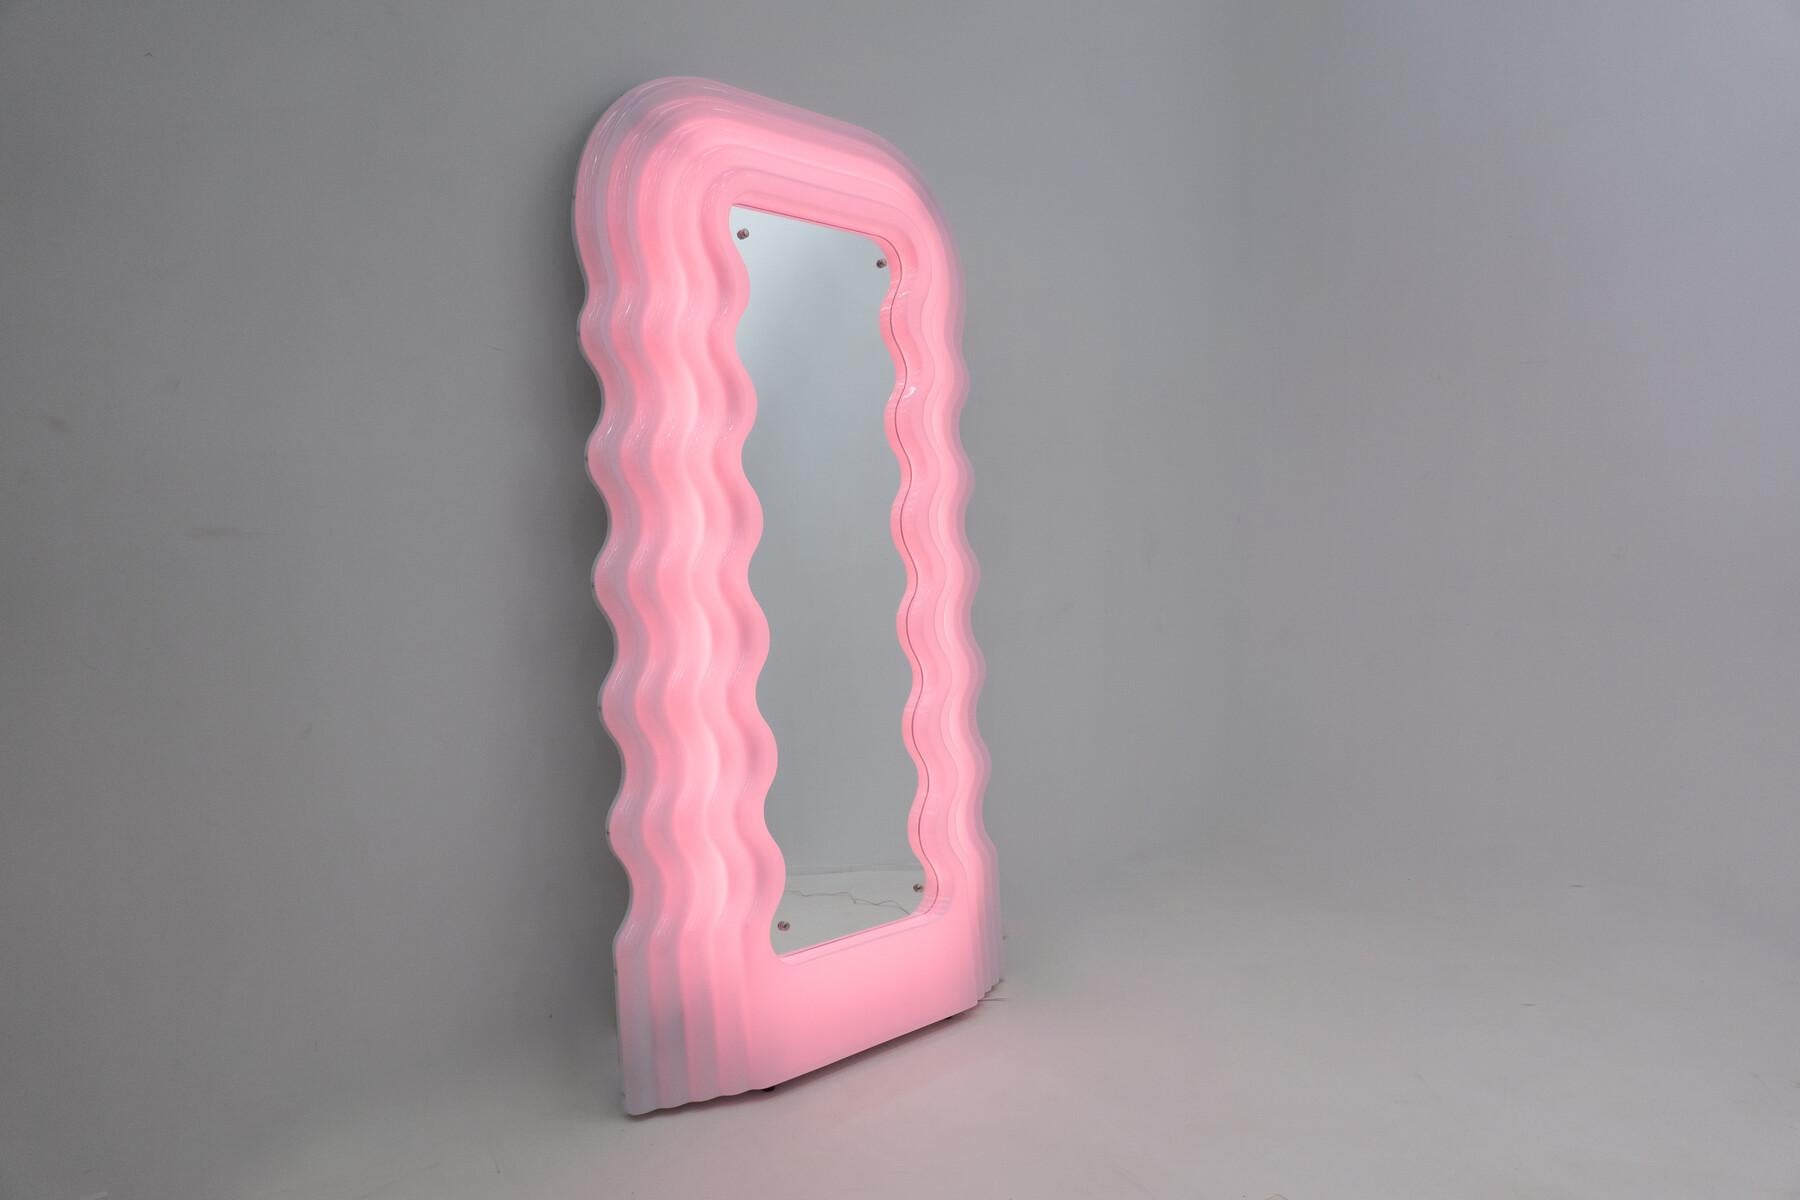 Ultrafragola Spiegel/Lampe von Ettore Sottsass, Poltronova

Verkauft mit Originalverpackung und Echtheitszertifikat 